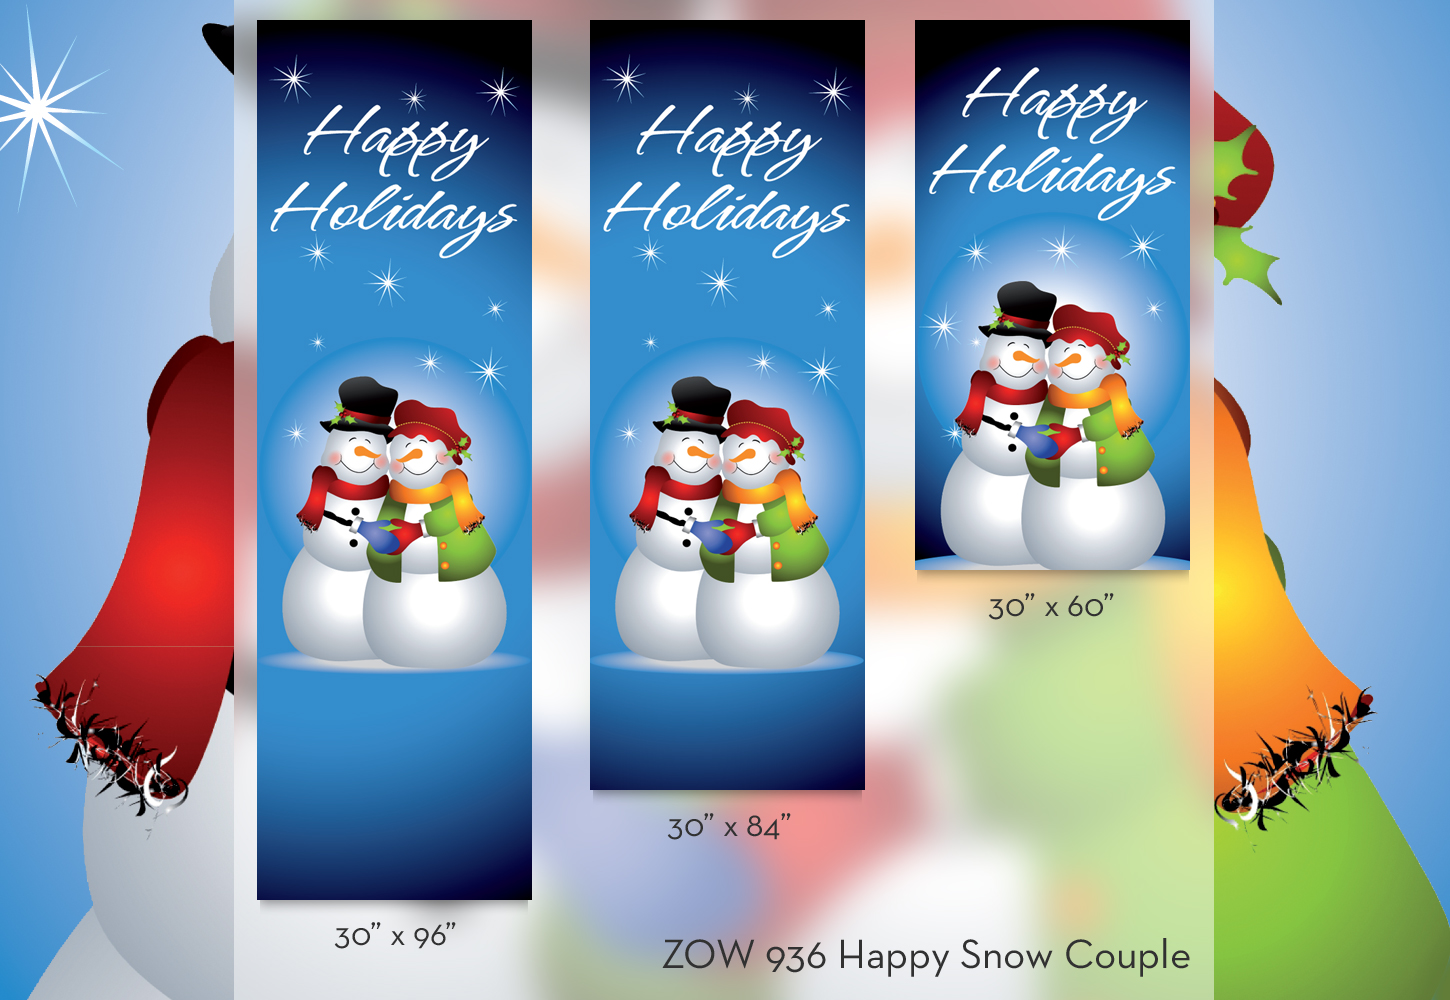 ZOW 936 Happy Snow Couple